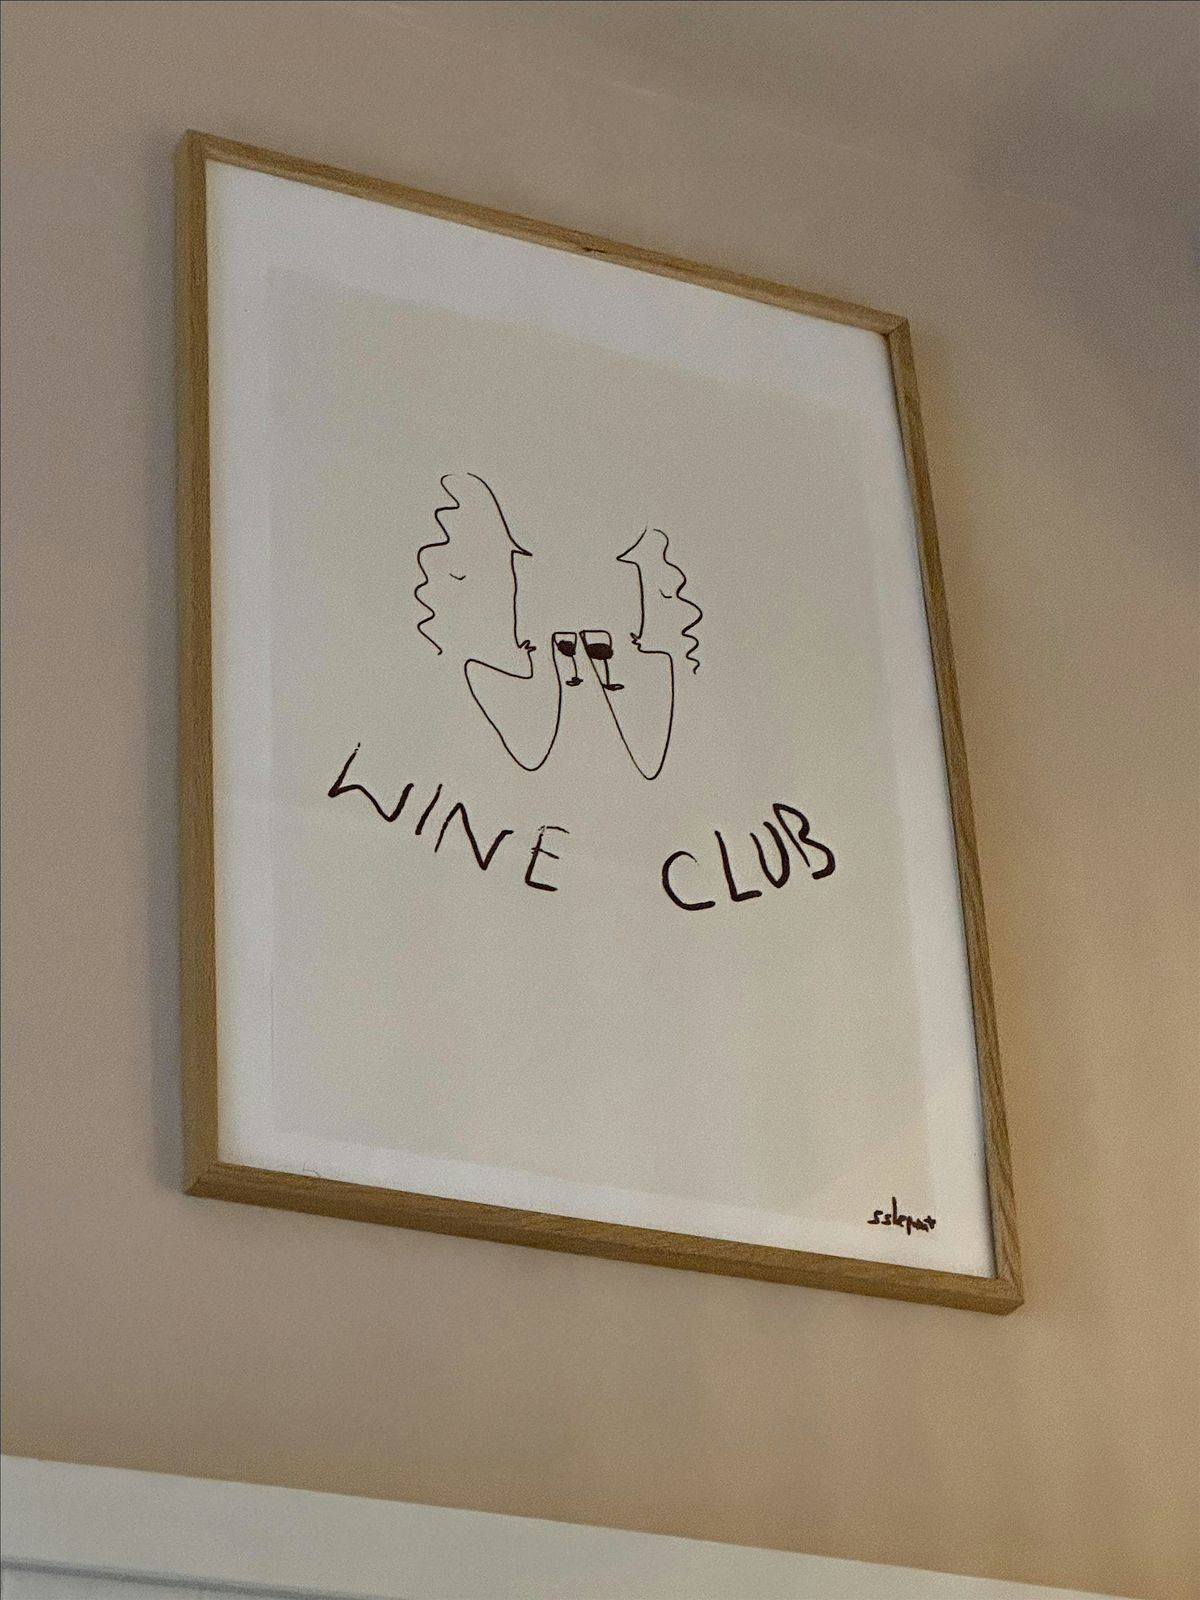 May Wine Club at No.40 by Bruin